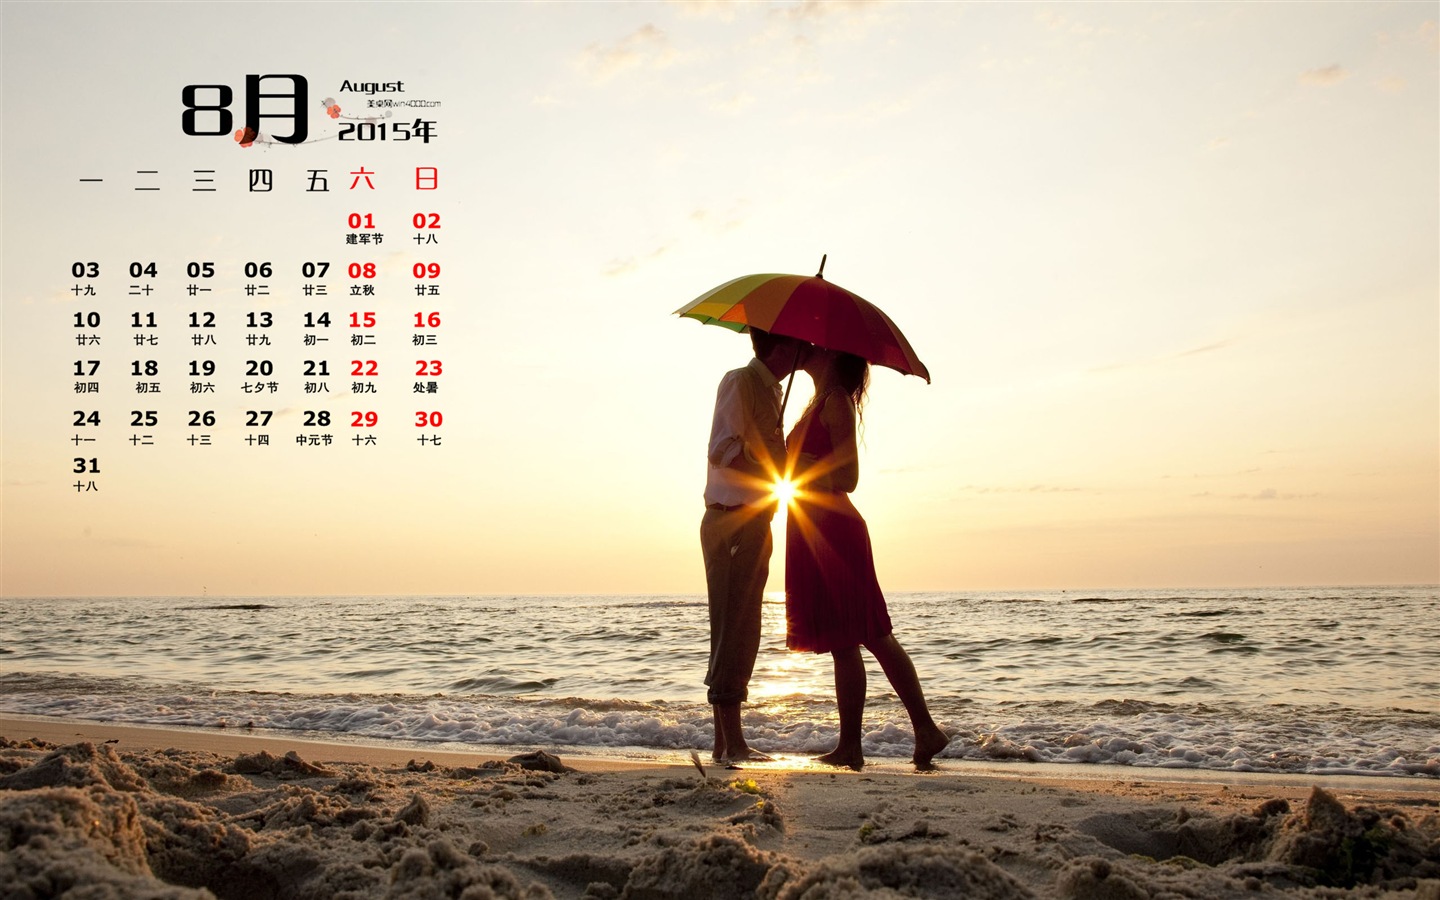 August 2015 Kalender Wallpaper (1) #14 - 1440x900